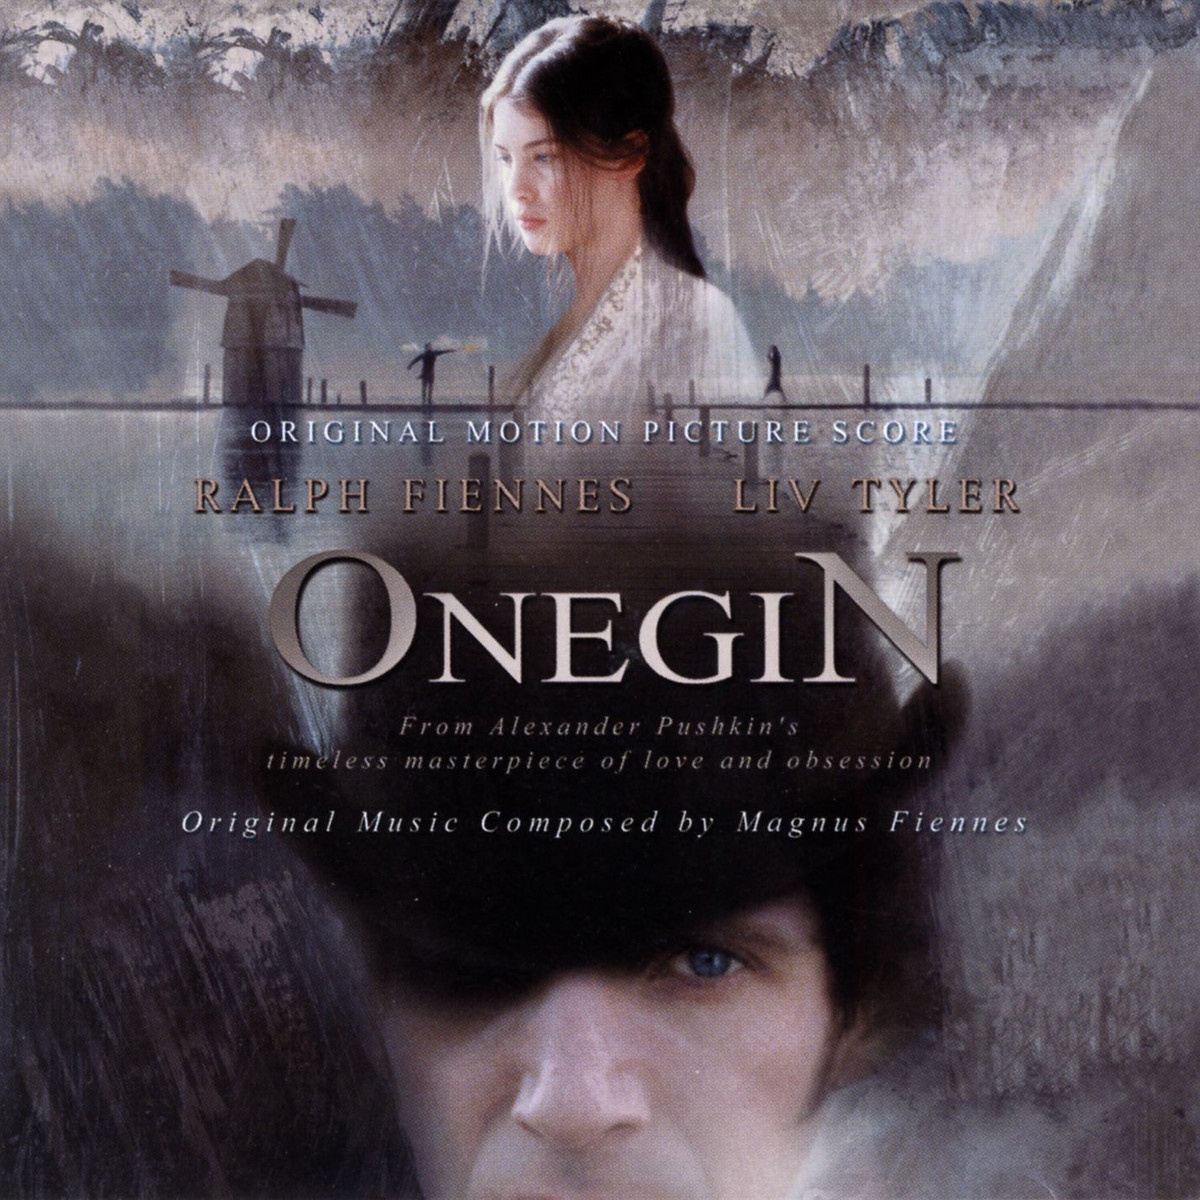 Onegin's Theme